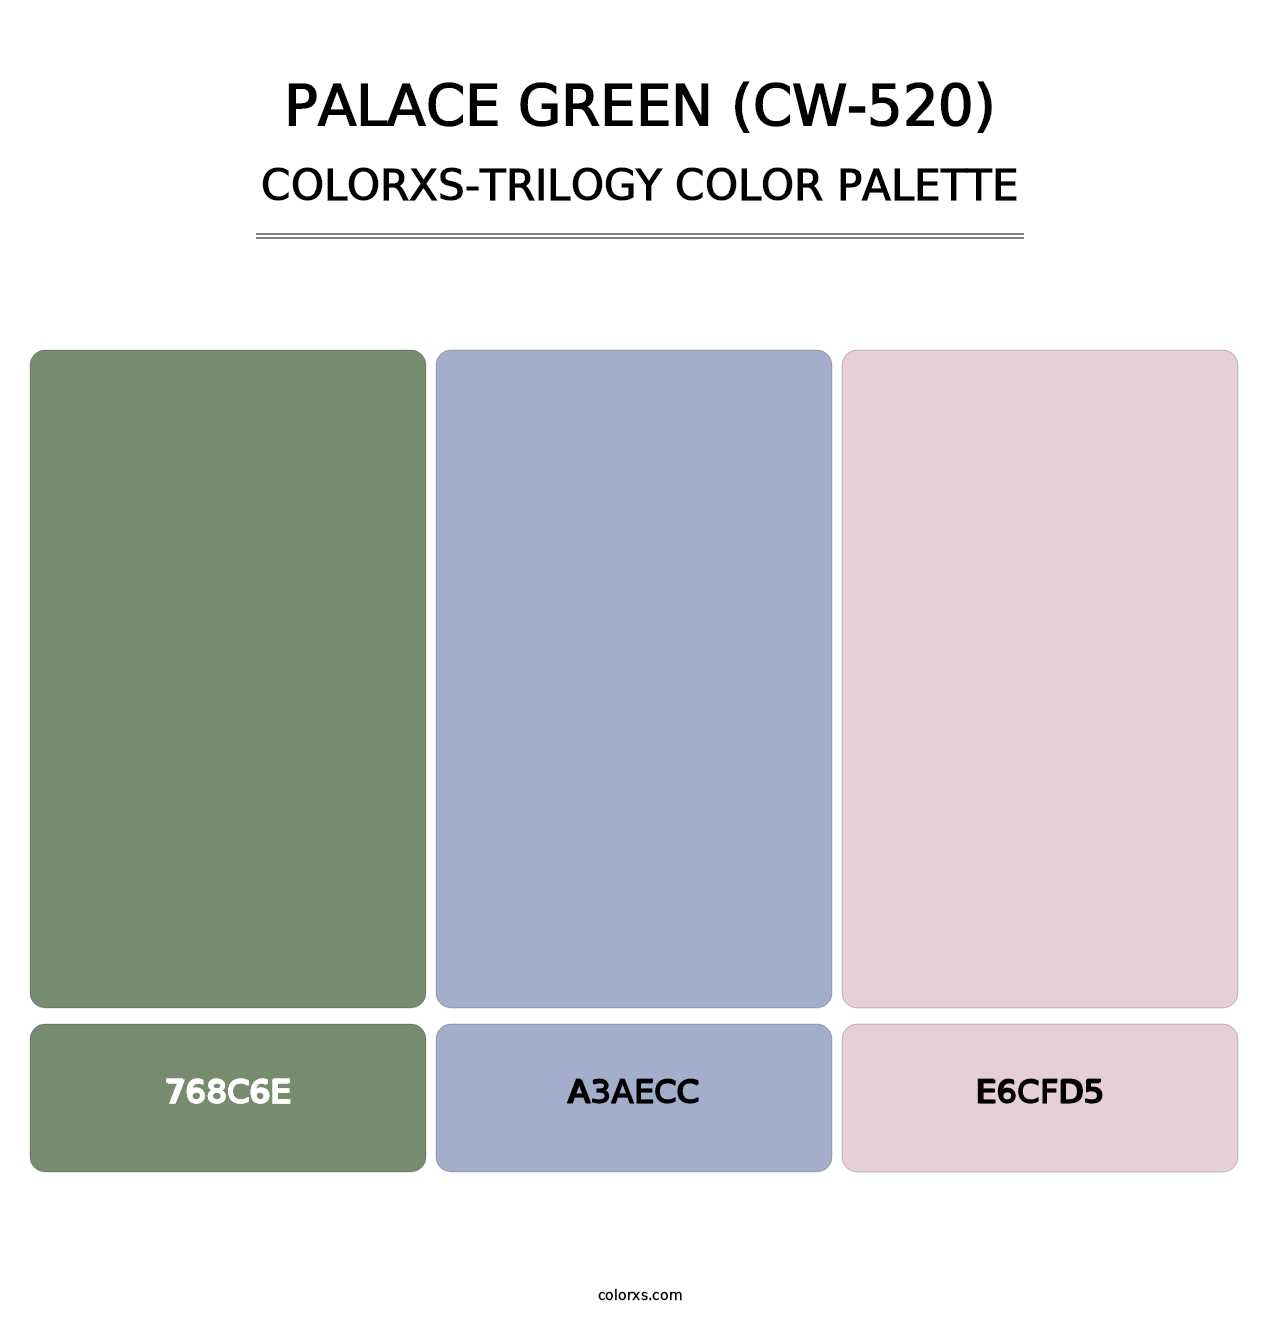 Palace Green (CW-520) - Colorxs Trilogy Palette